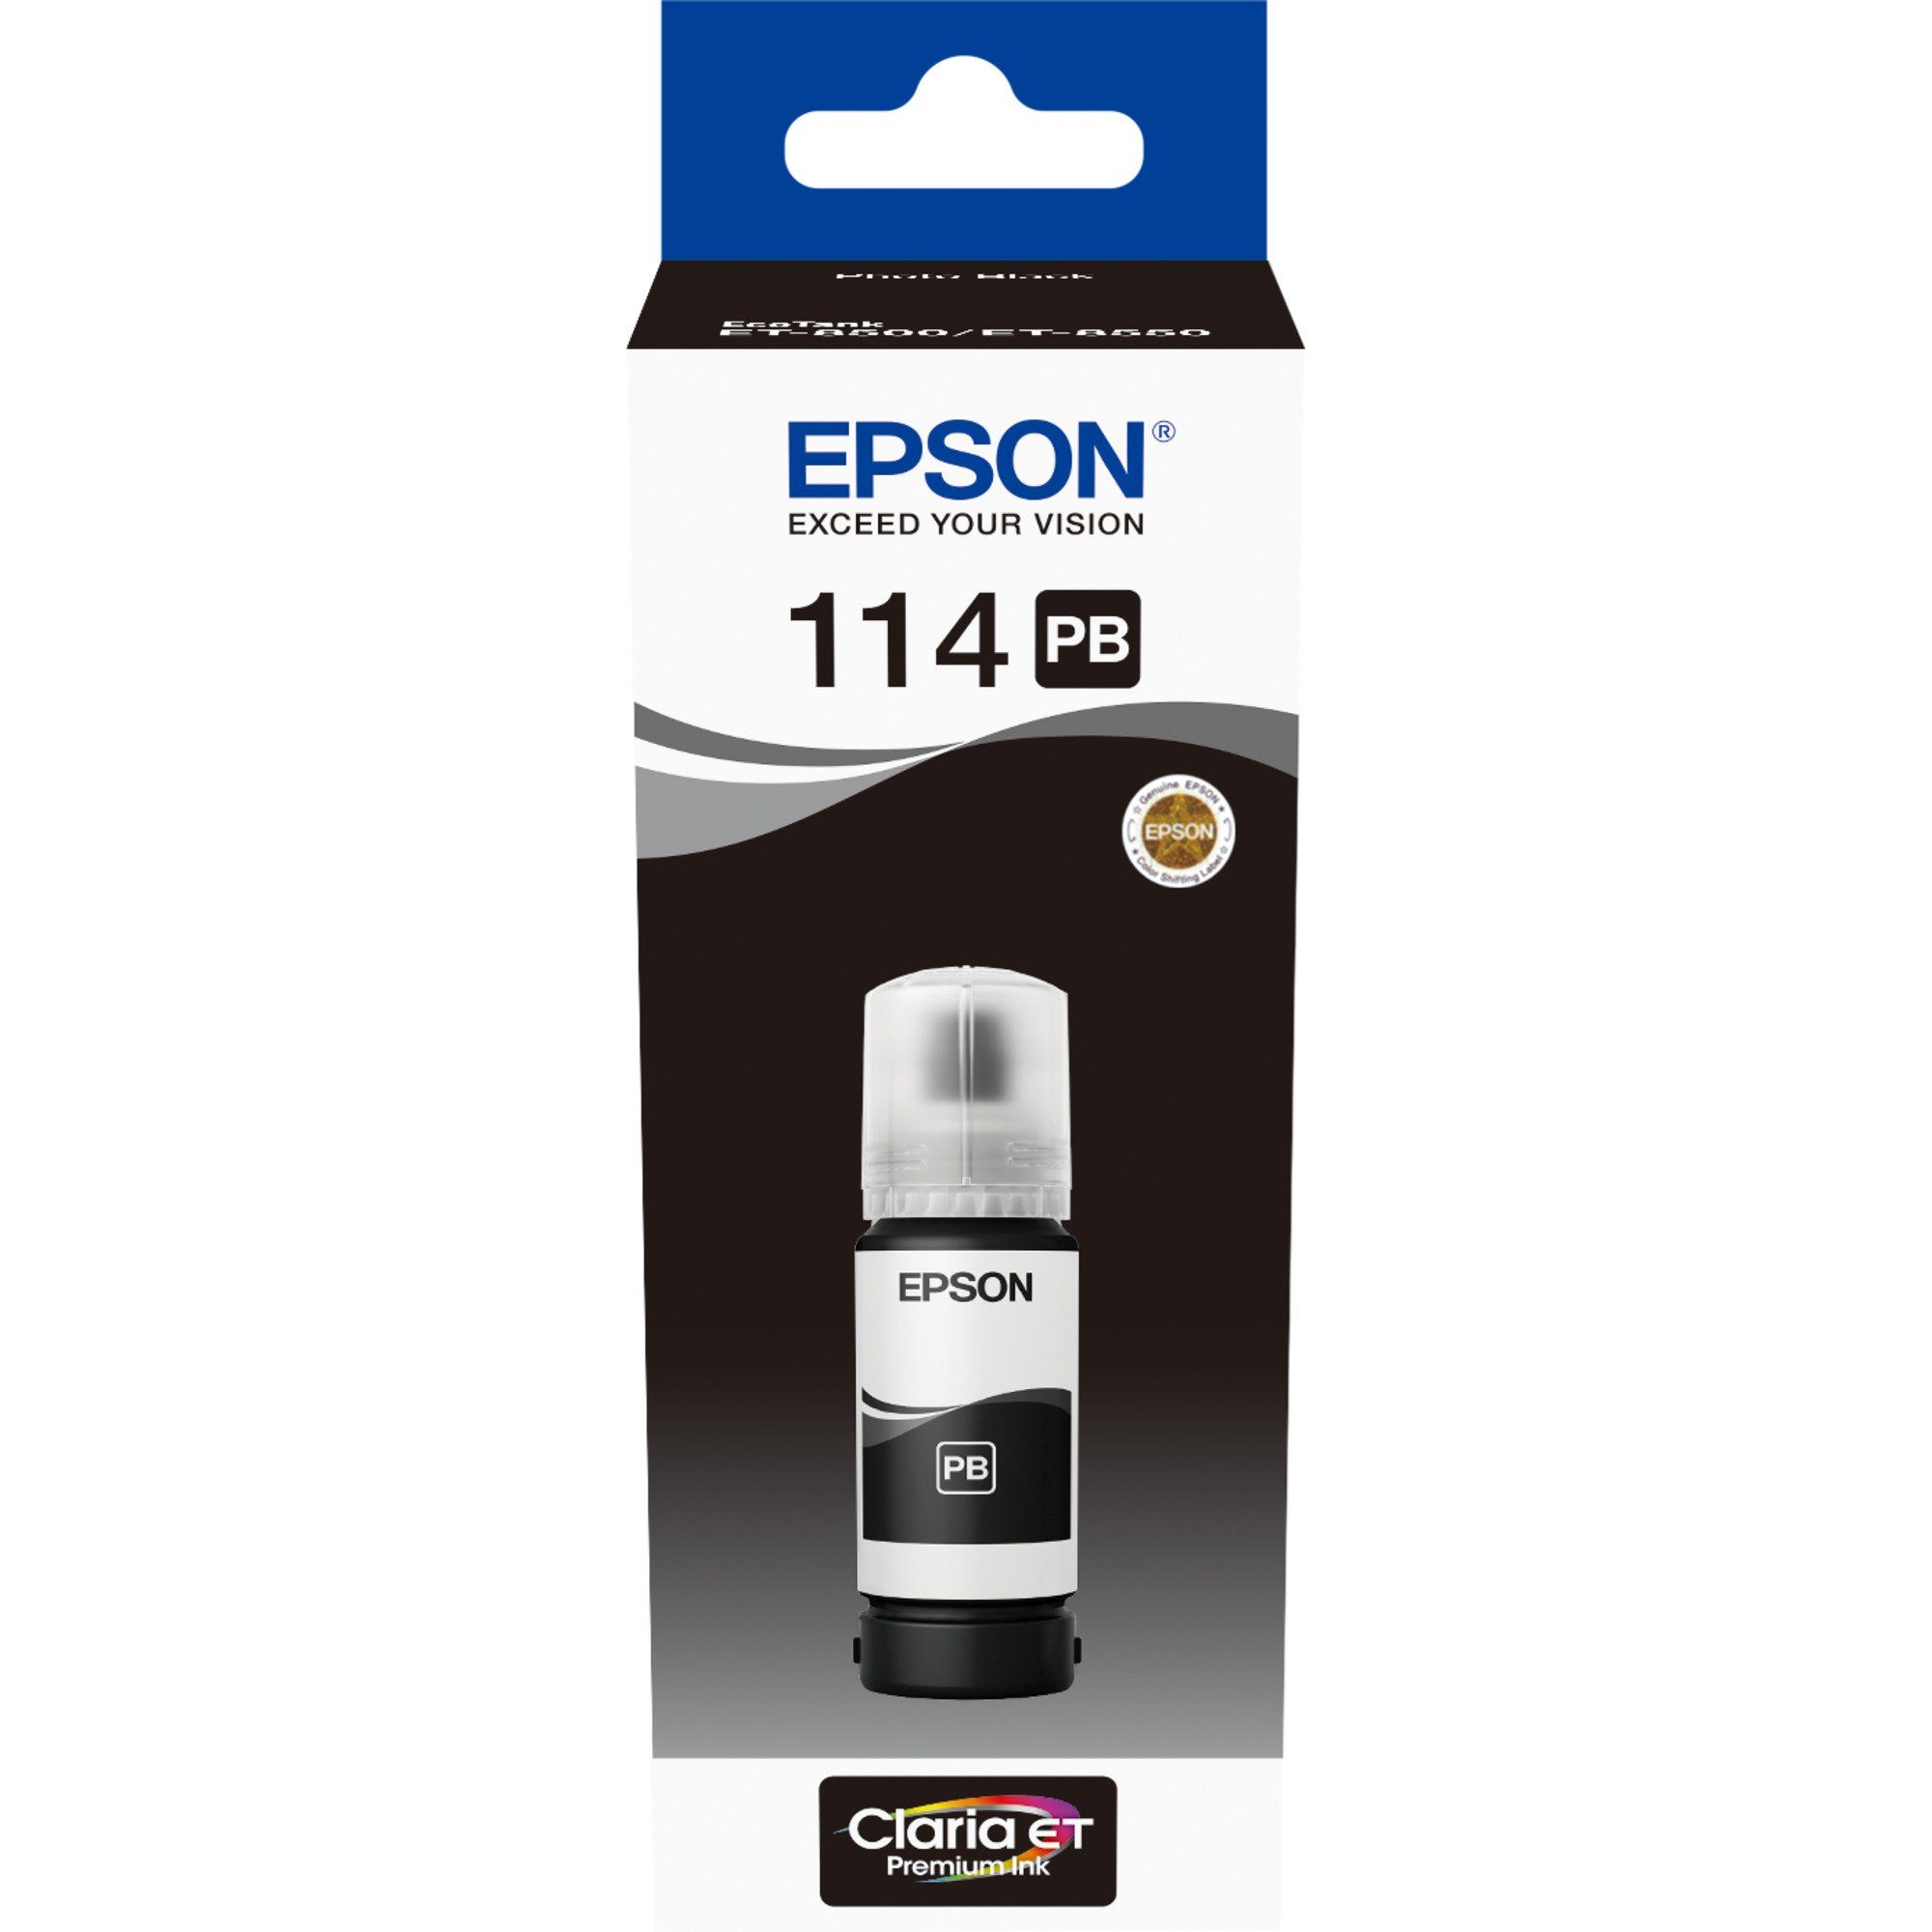 Epson Epson Tinte photoschwarz schwarz (Foto) (C13T07B140) 114 Tintenpatrone EcoTank